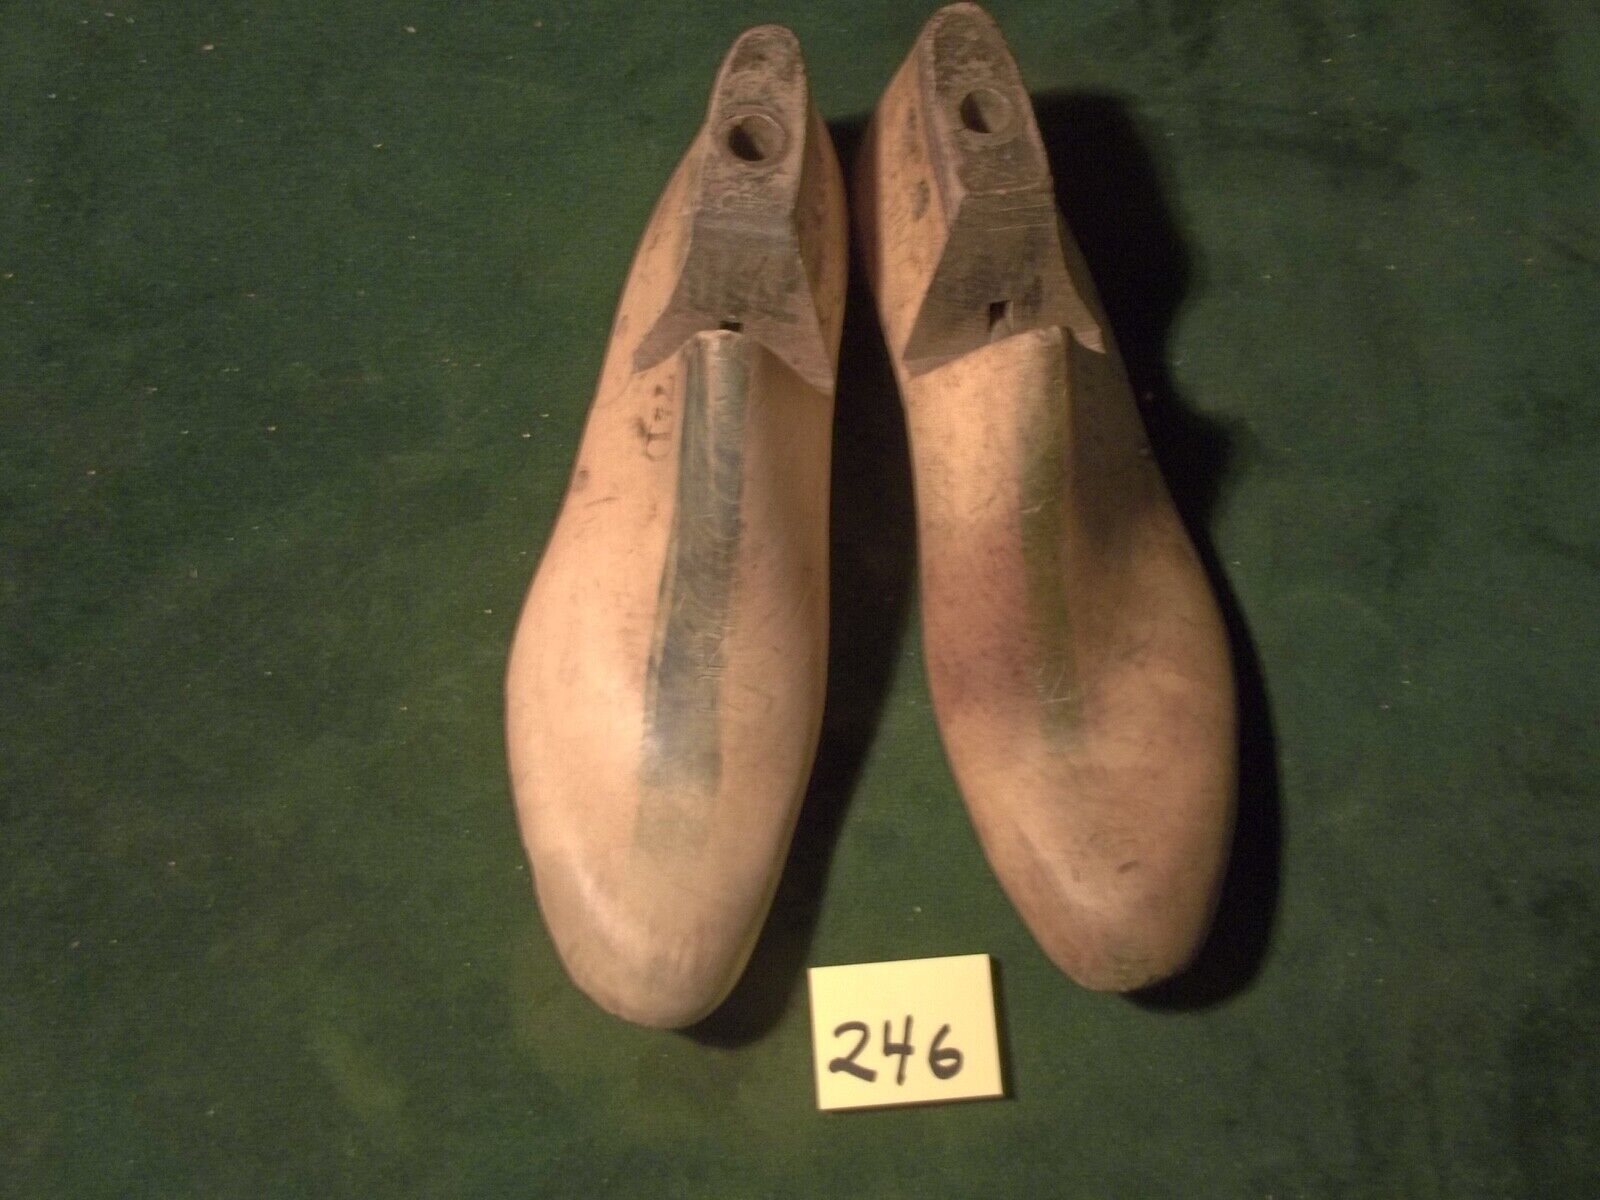 Vintage Pair 1942 US NAVY Size 7-1/2 D UNITED Brockton Factory Shoe Lasts #246